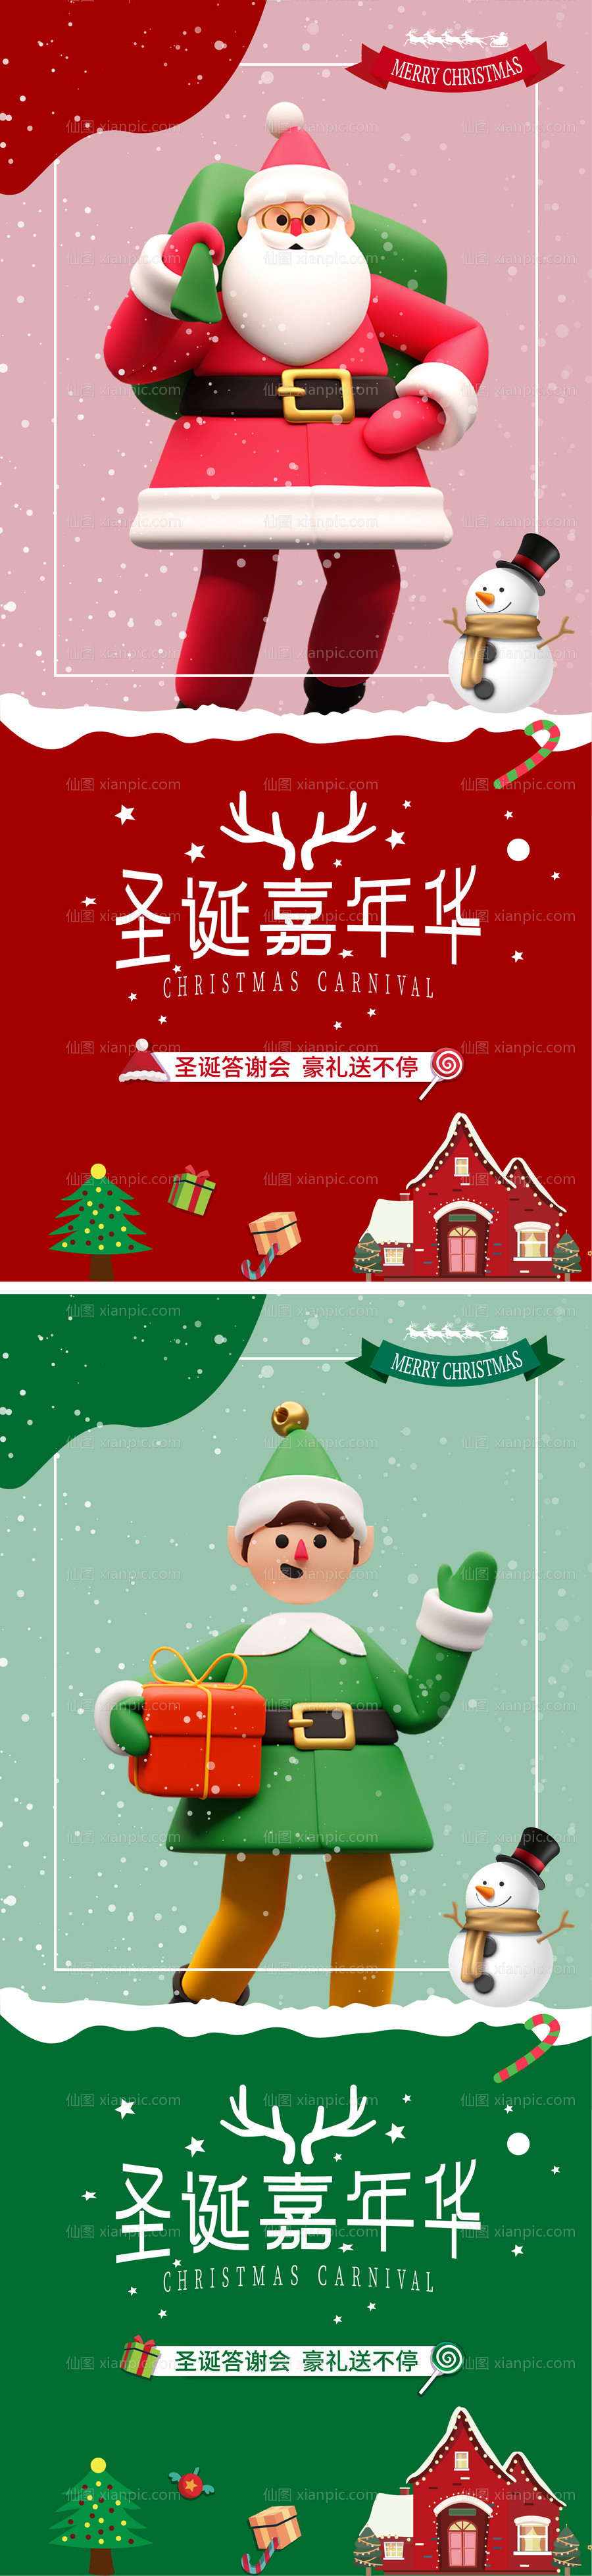 素材乐-圣诞节系列海报